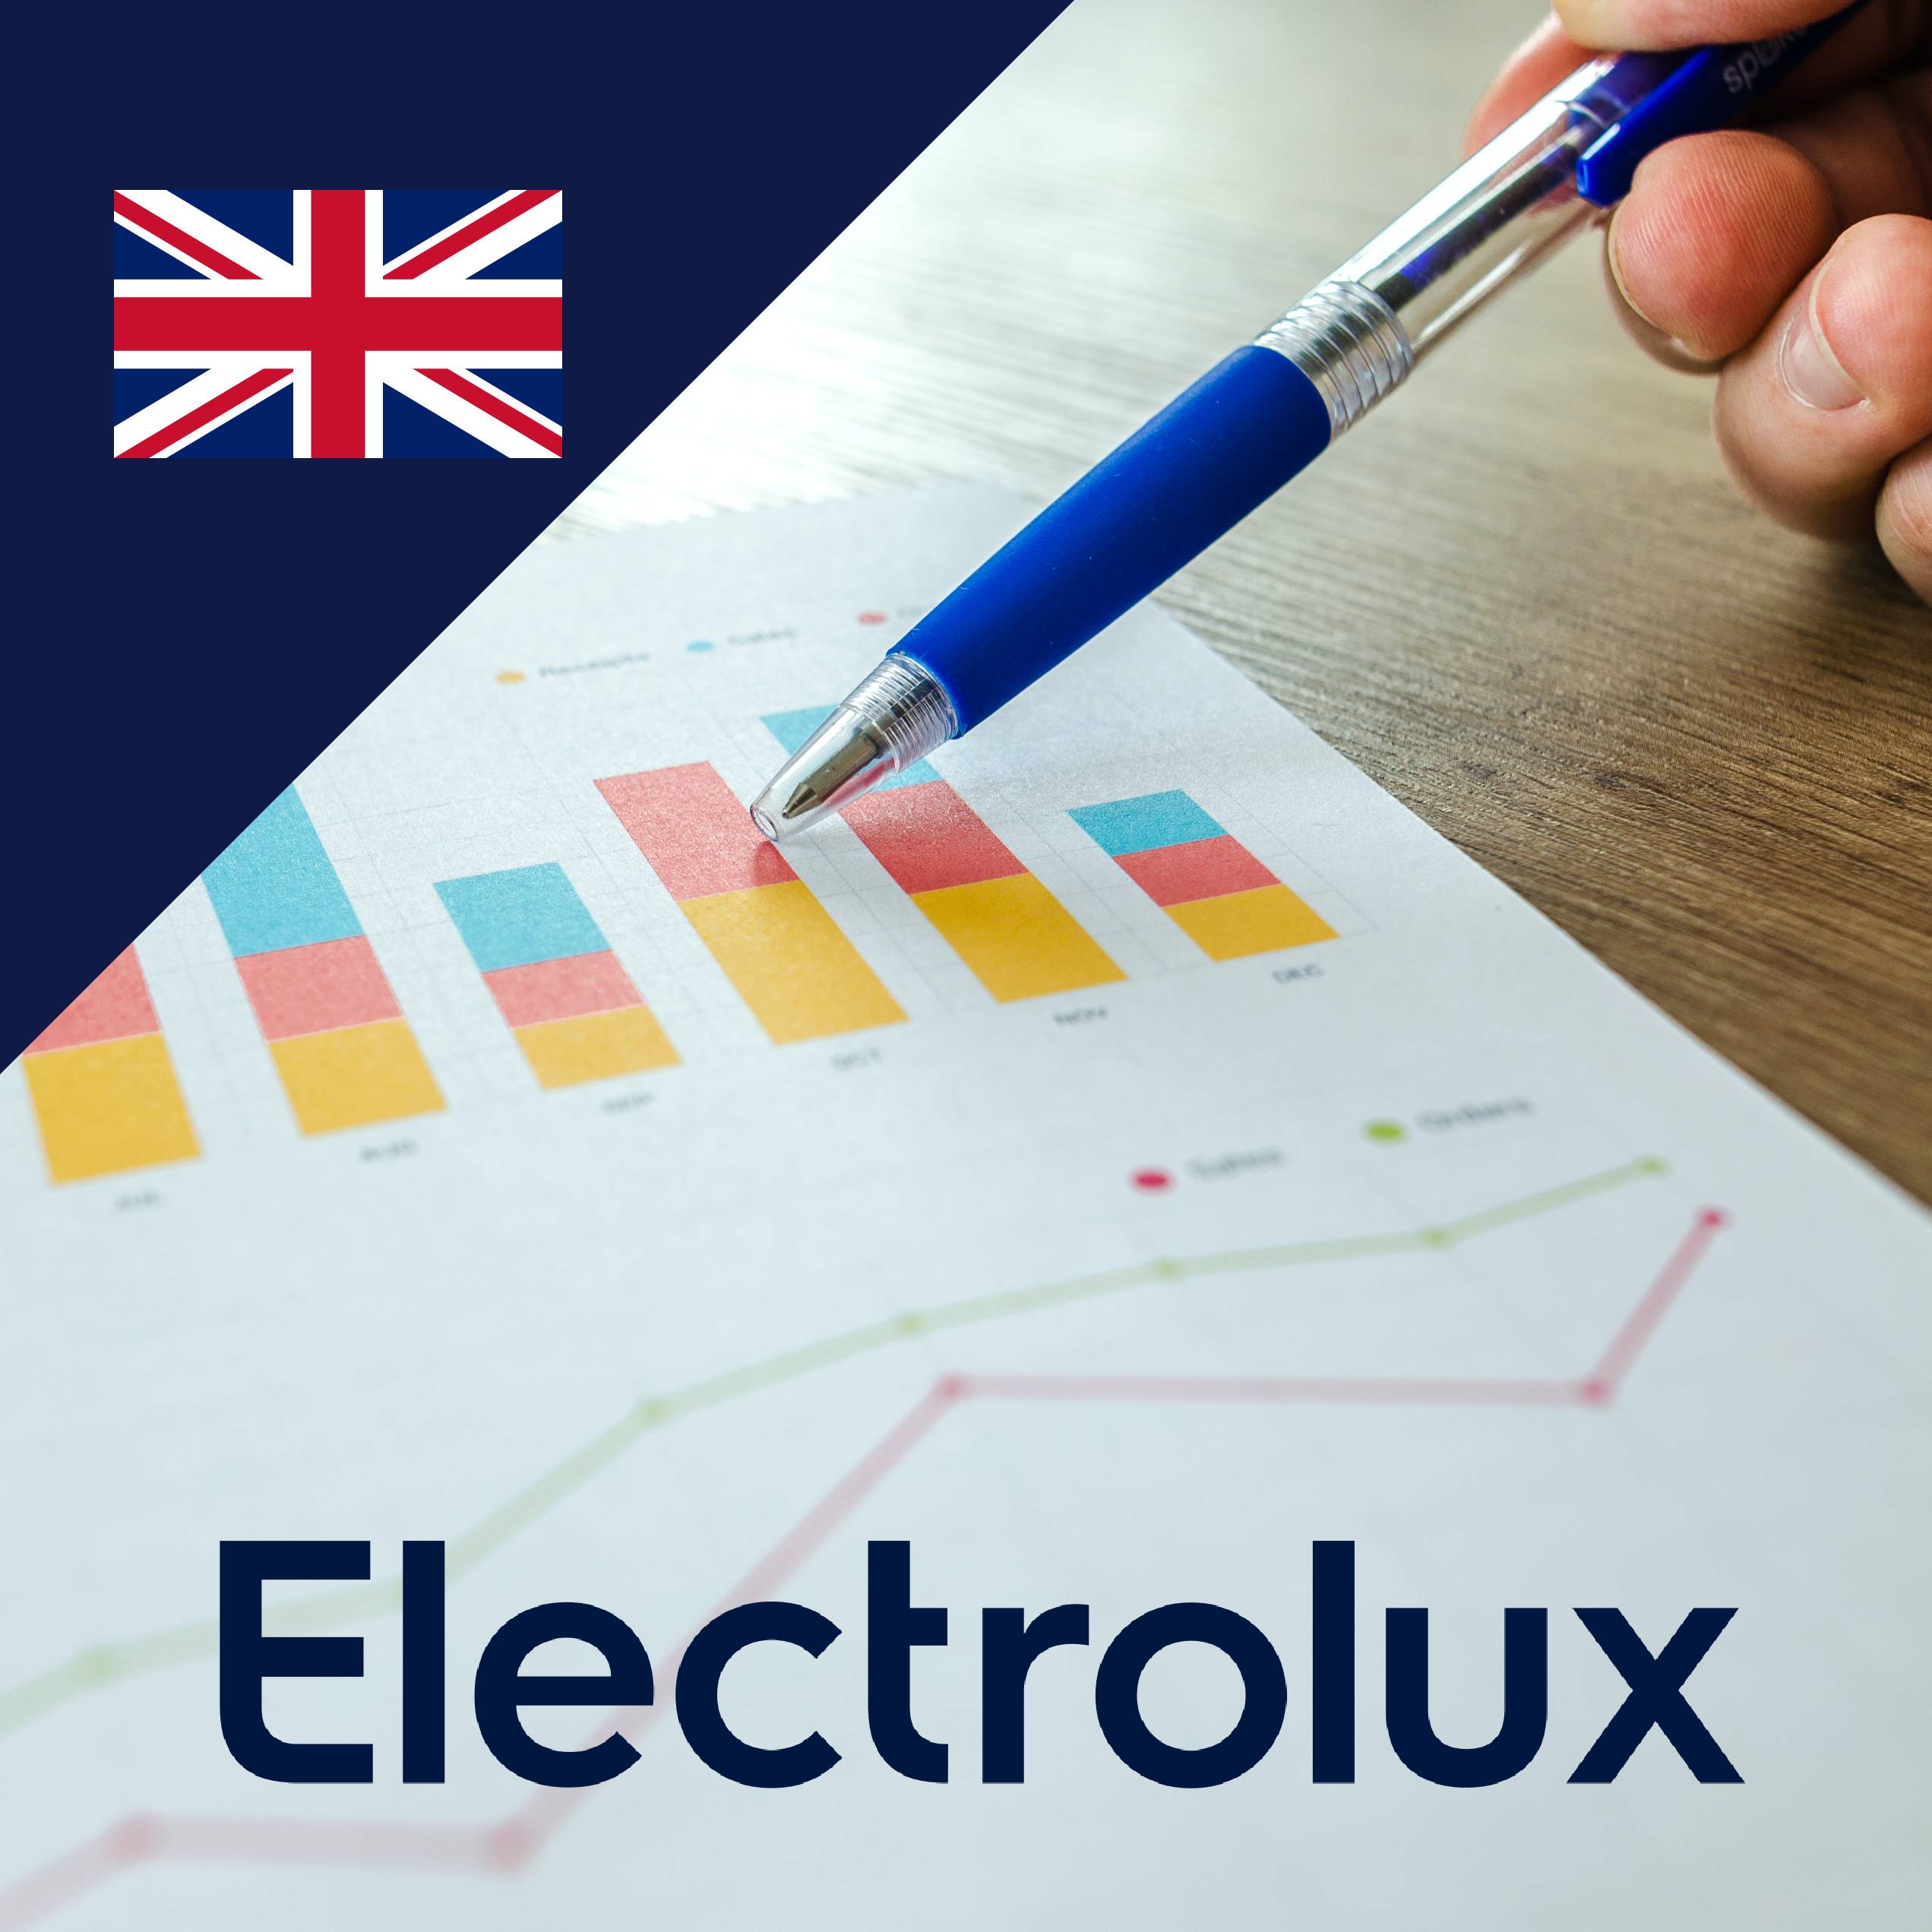 electrolux strategy case study